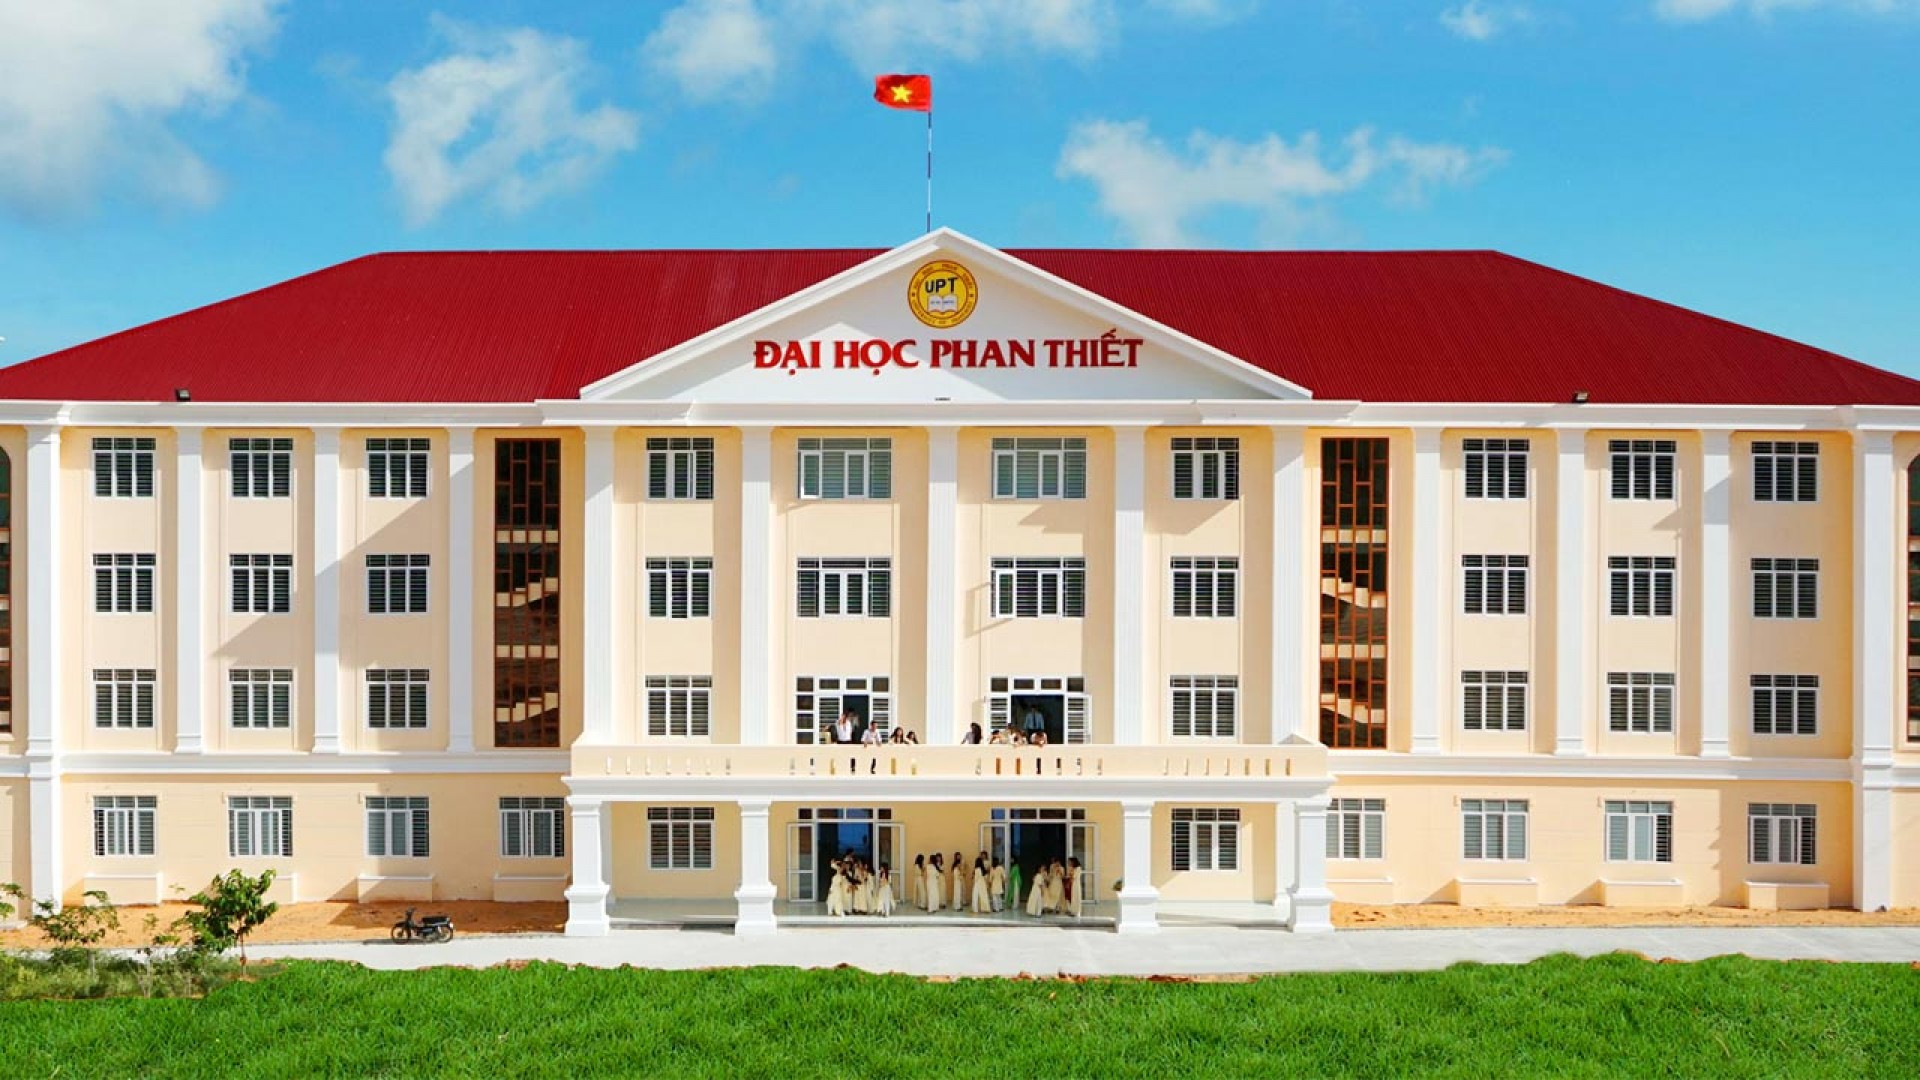 Tổng hợp thông tin tuyển sinh, điểm chuẩn của Đại học Phan Thiết năm 2019